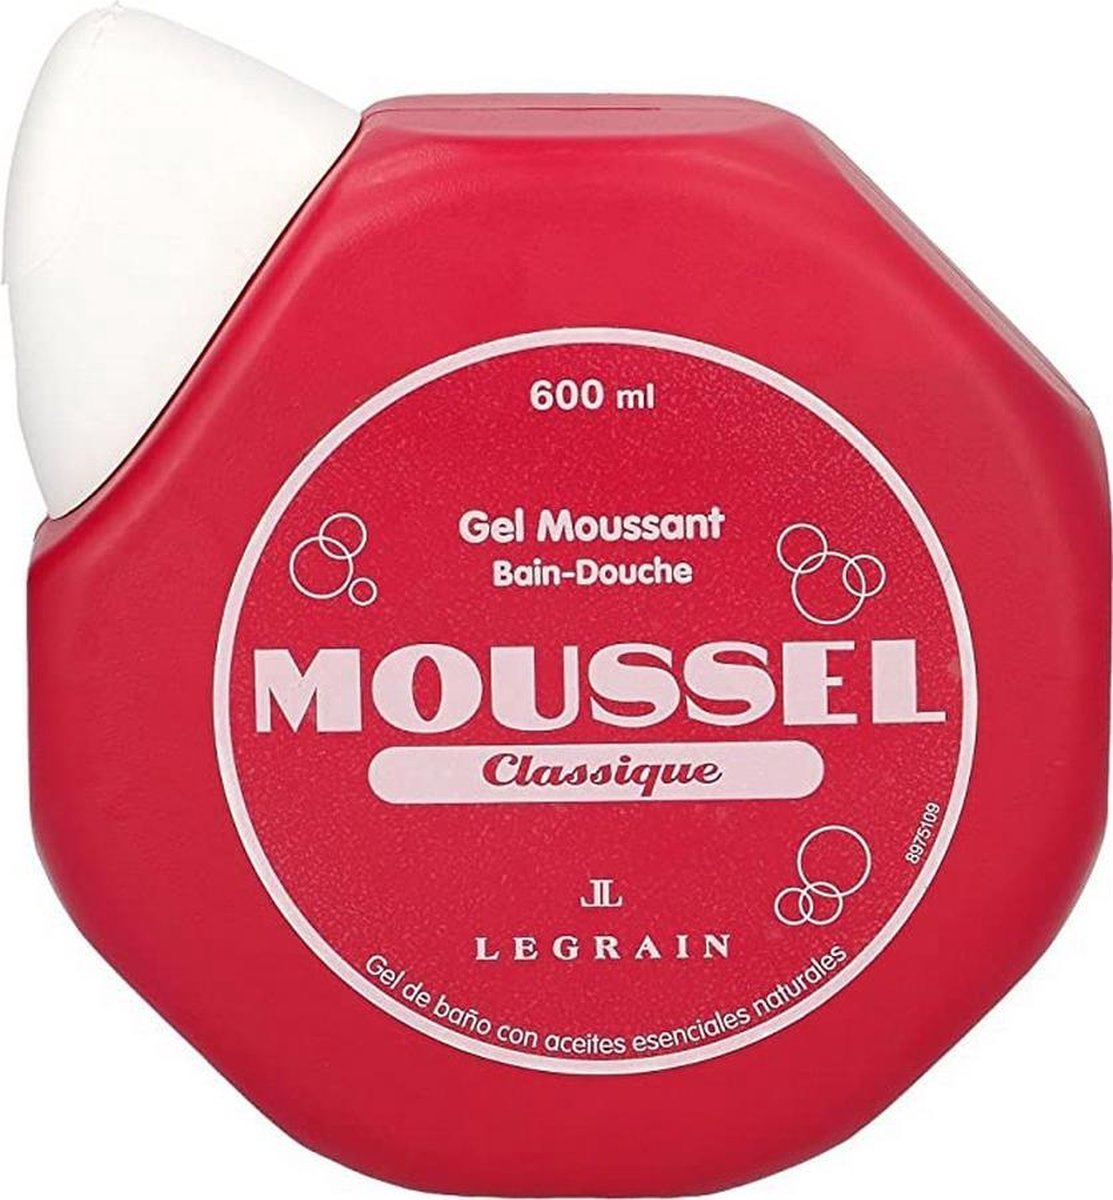 Gel douche Clásico Legrain Moussel (600 ml) | bol.com